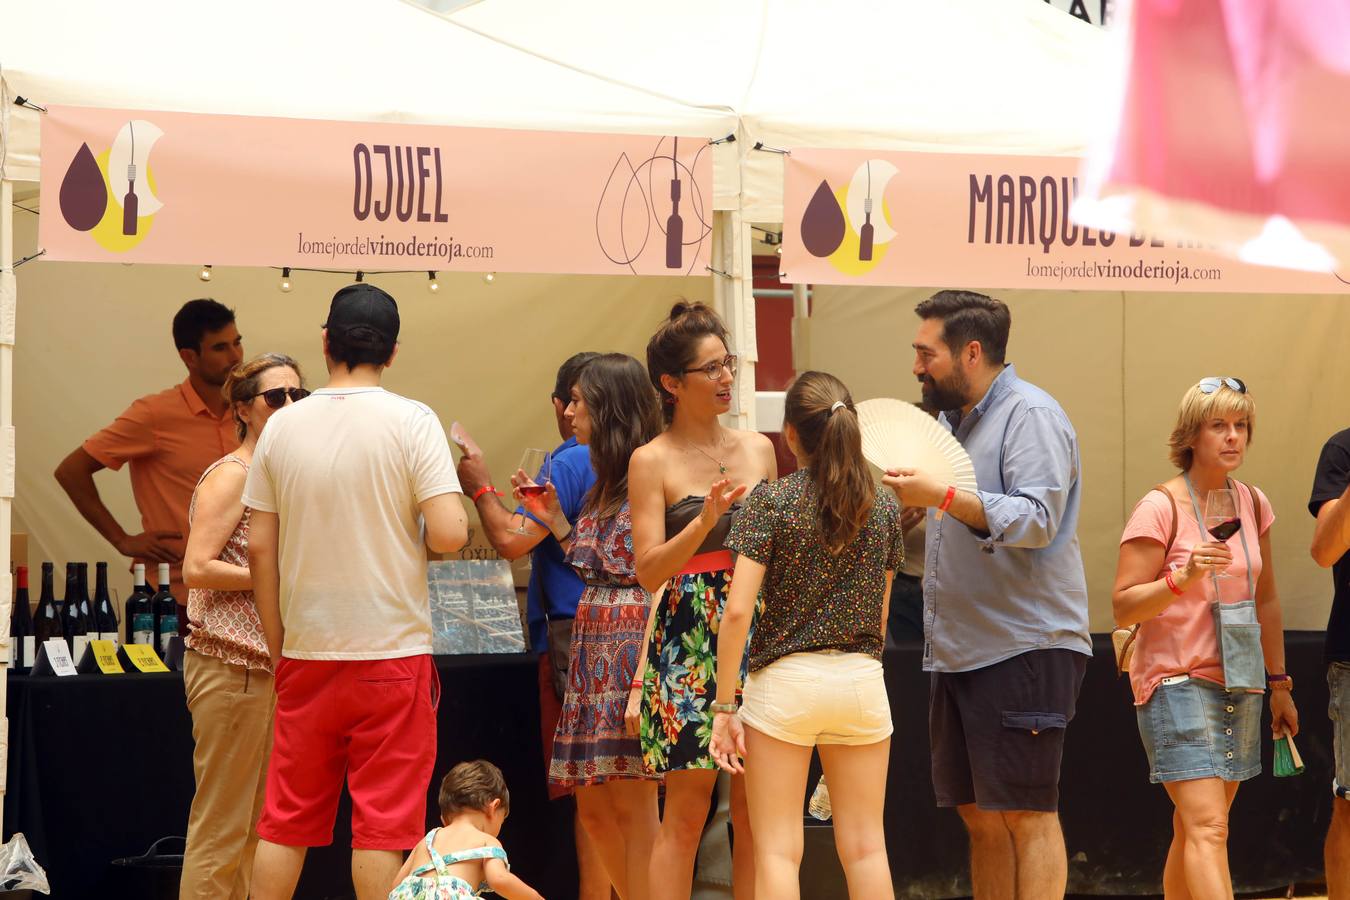 Fotos: El vino de Rioja vuelve a tomar La Ribera